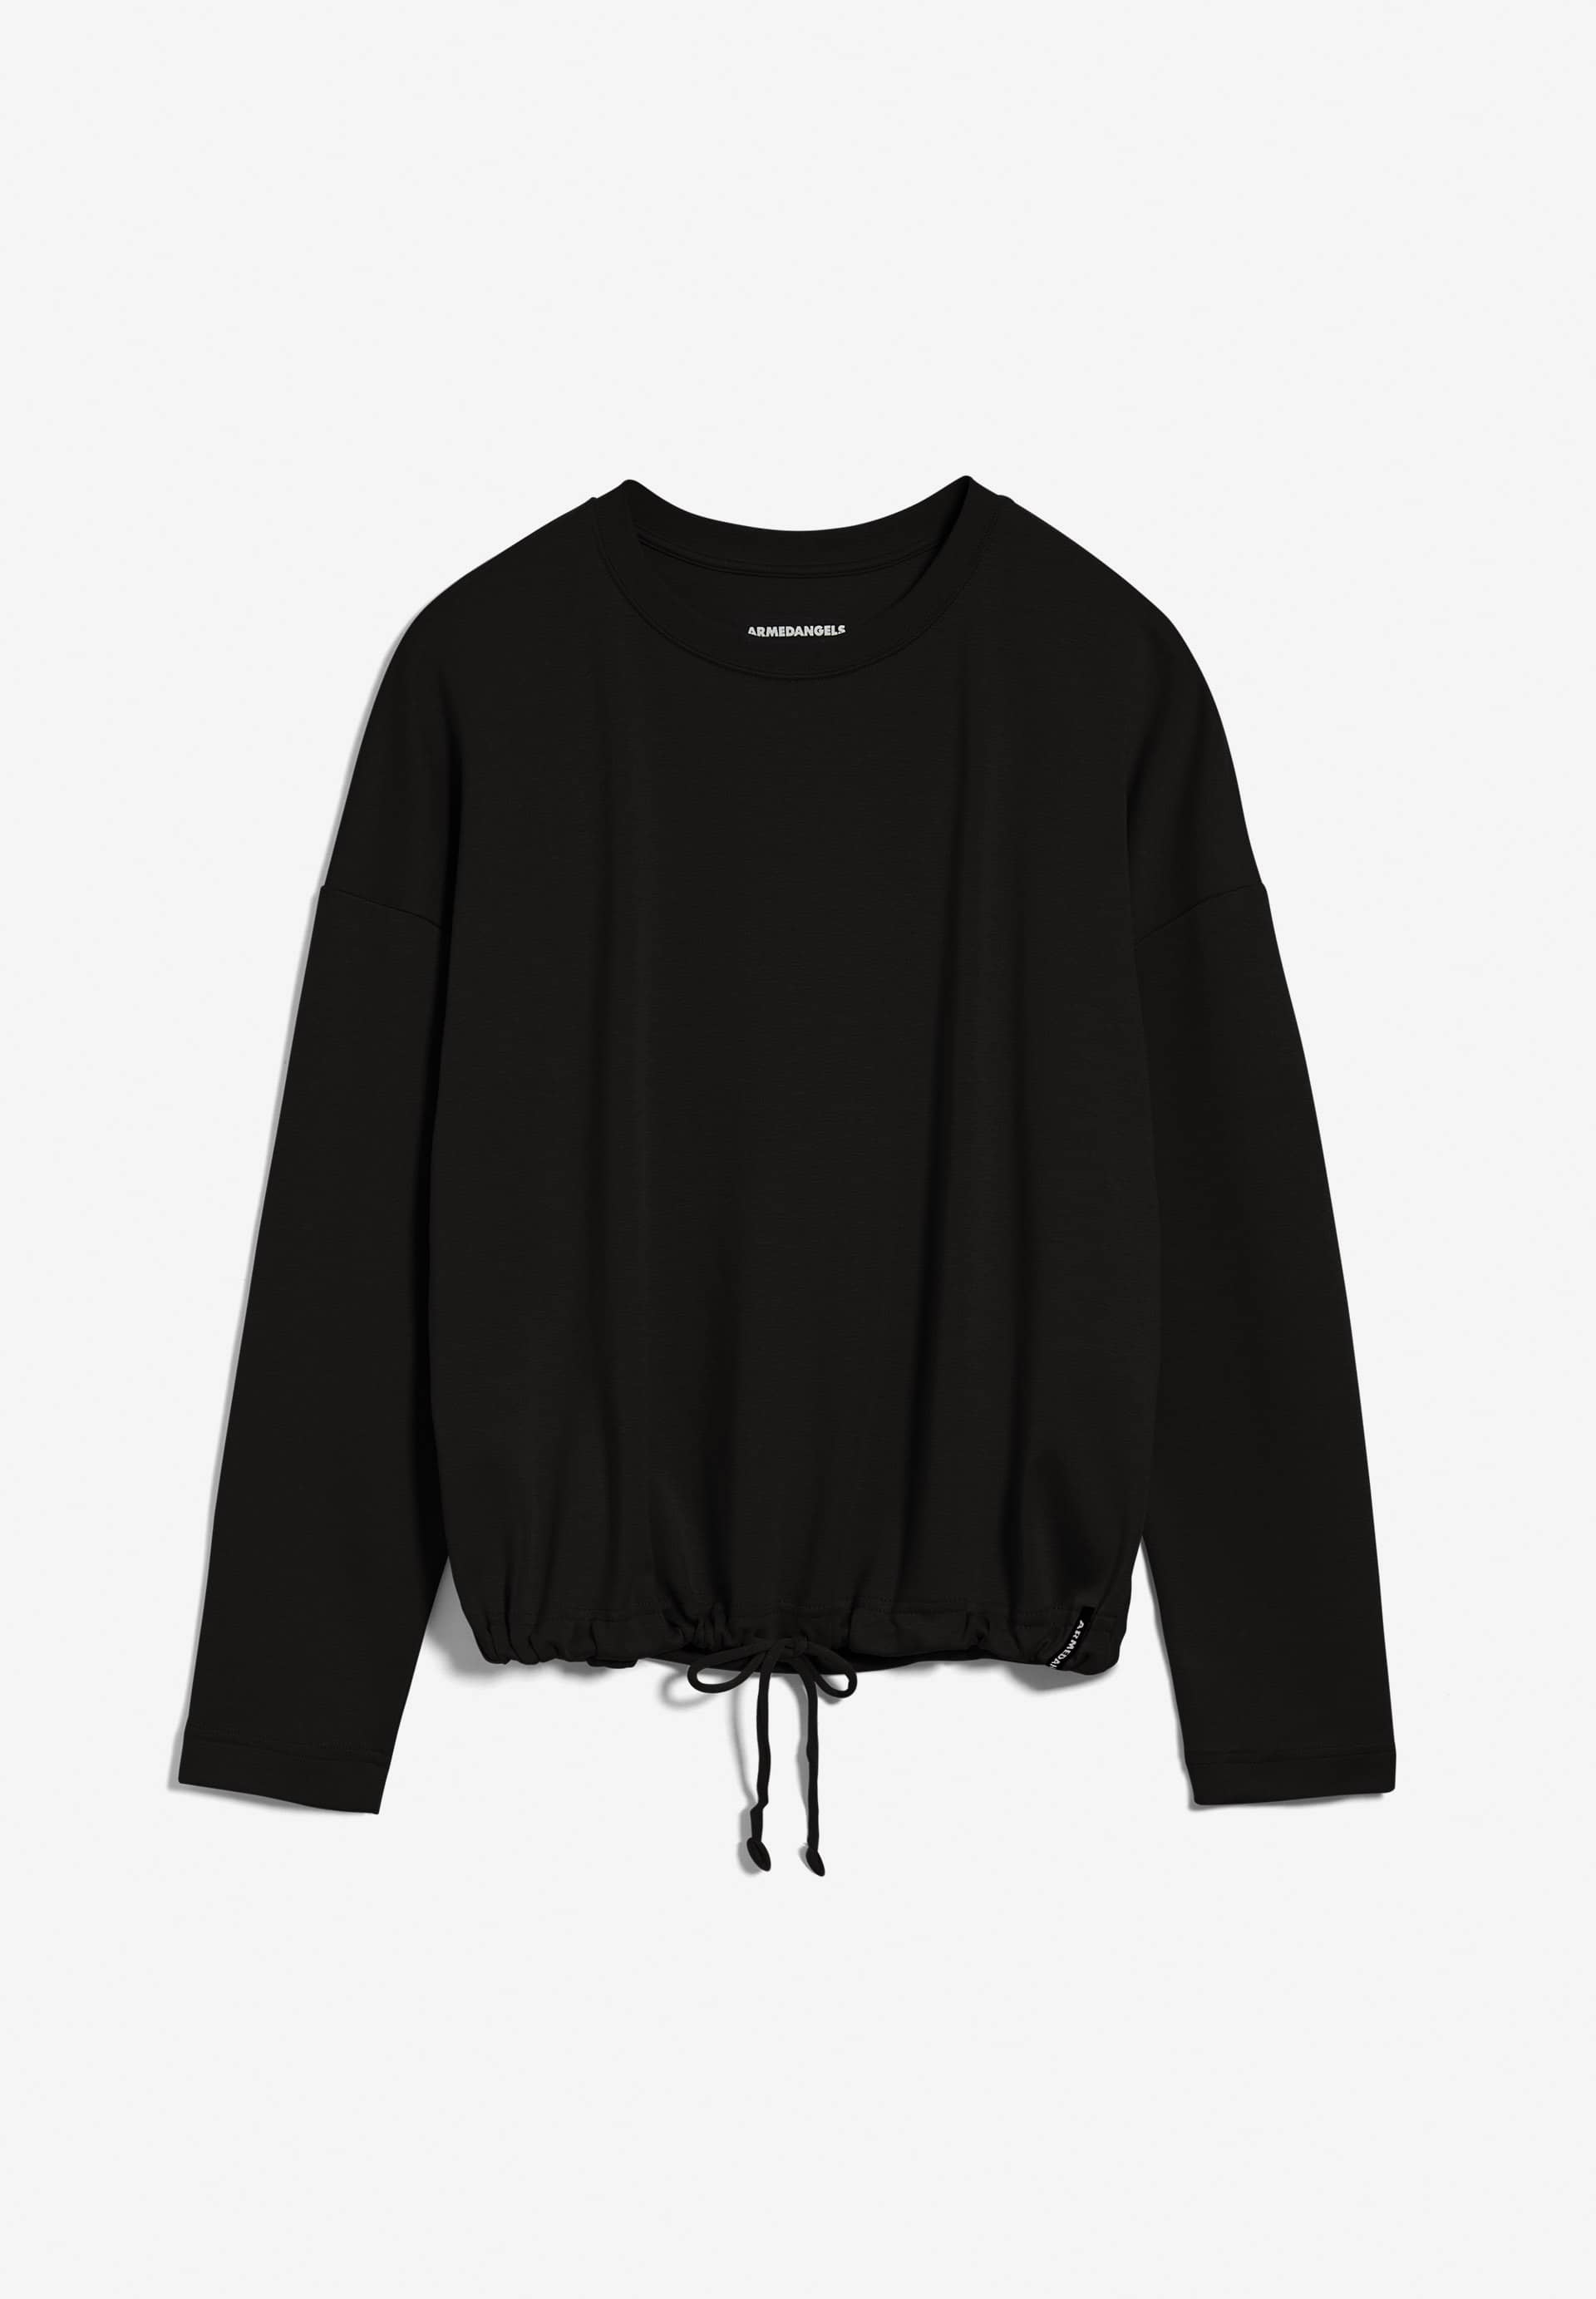 MAAILAA Sweatshirt Loose Fit made of TENCEL™ Lyocell Mix